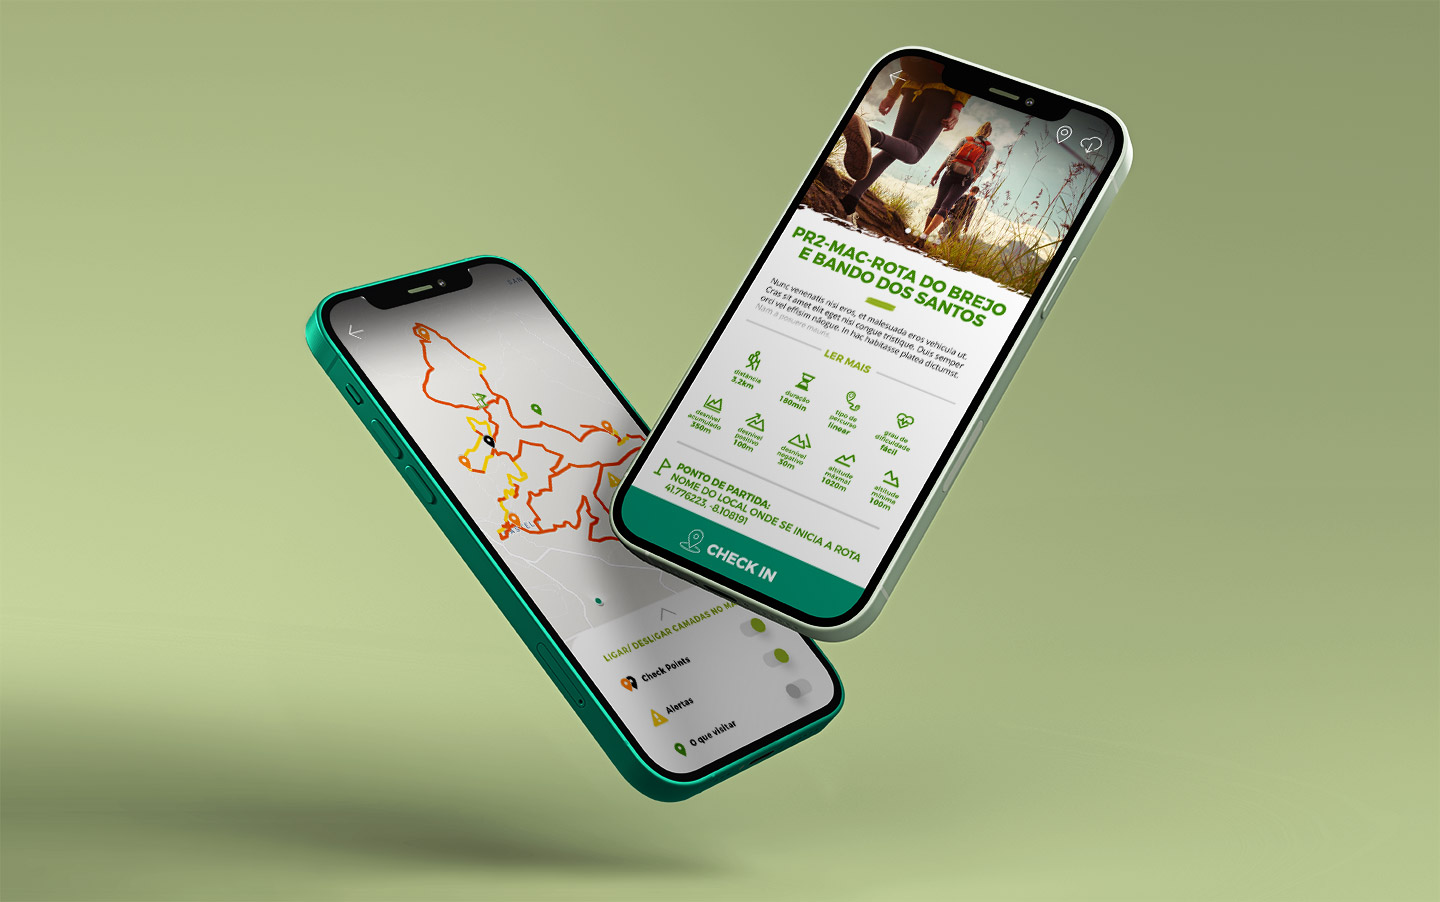 app Rotas de Mação, desenvolvida por Infoportugal